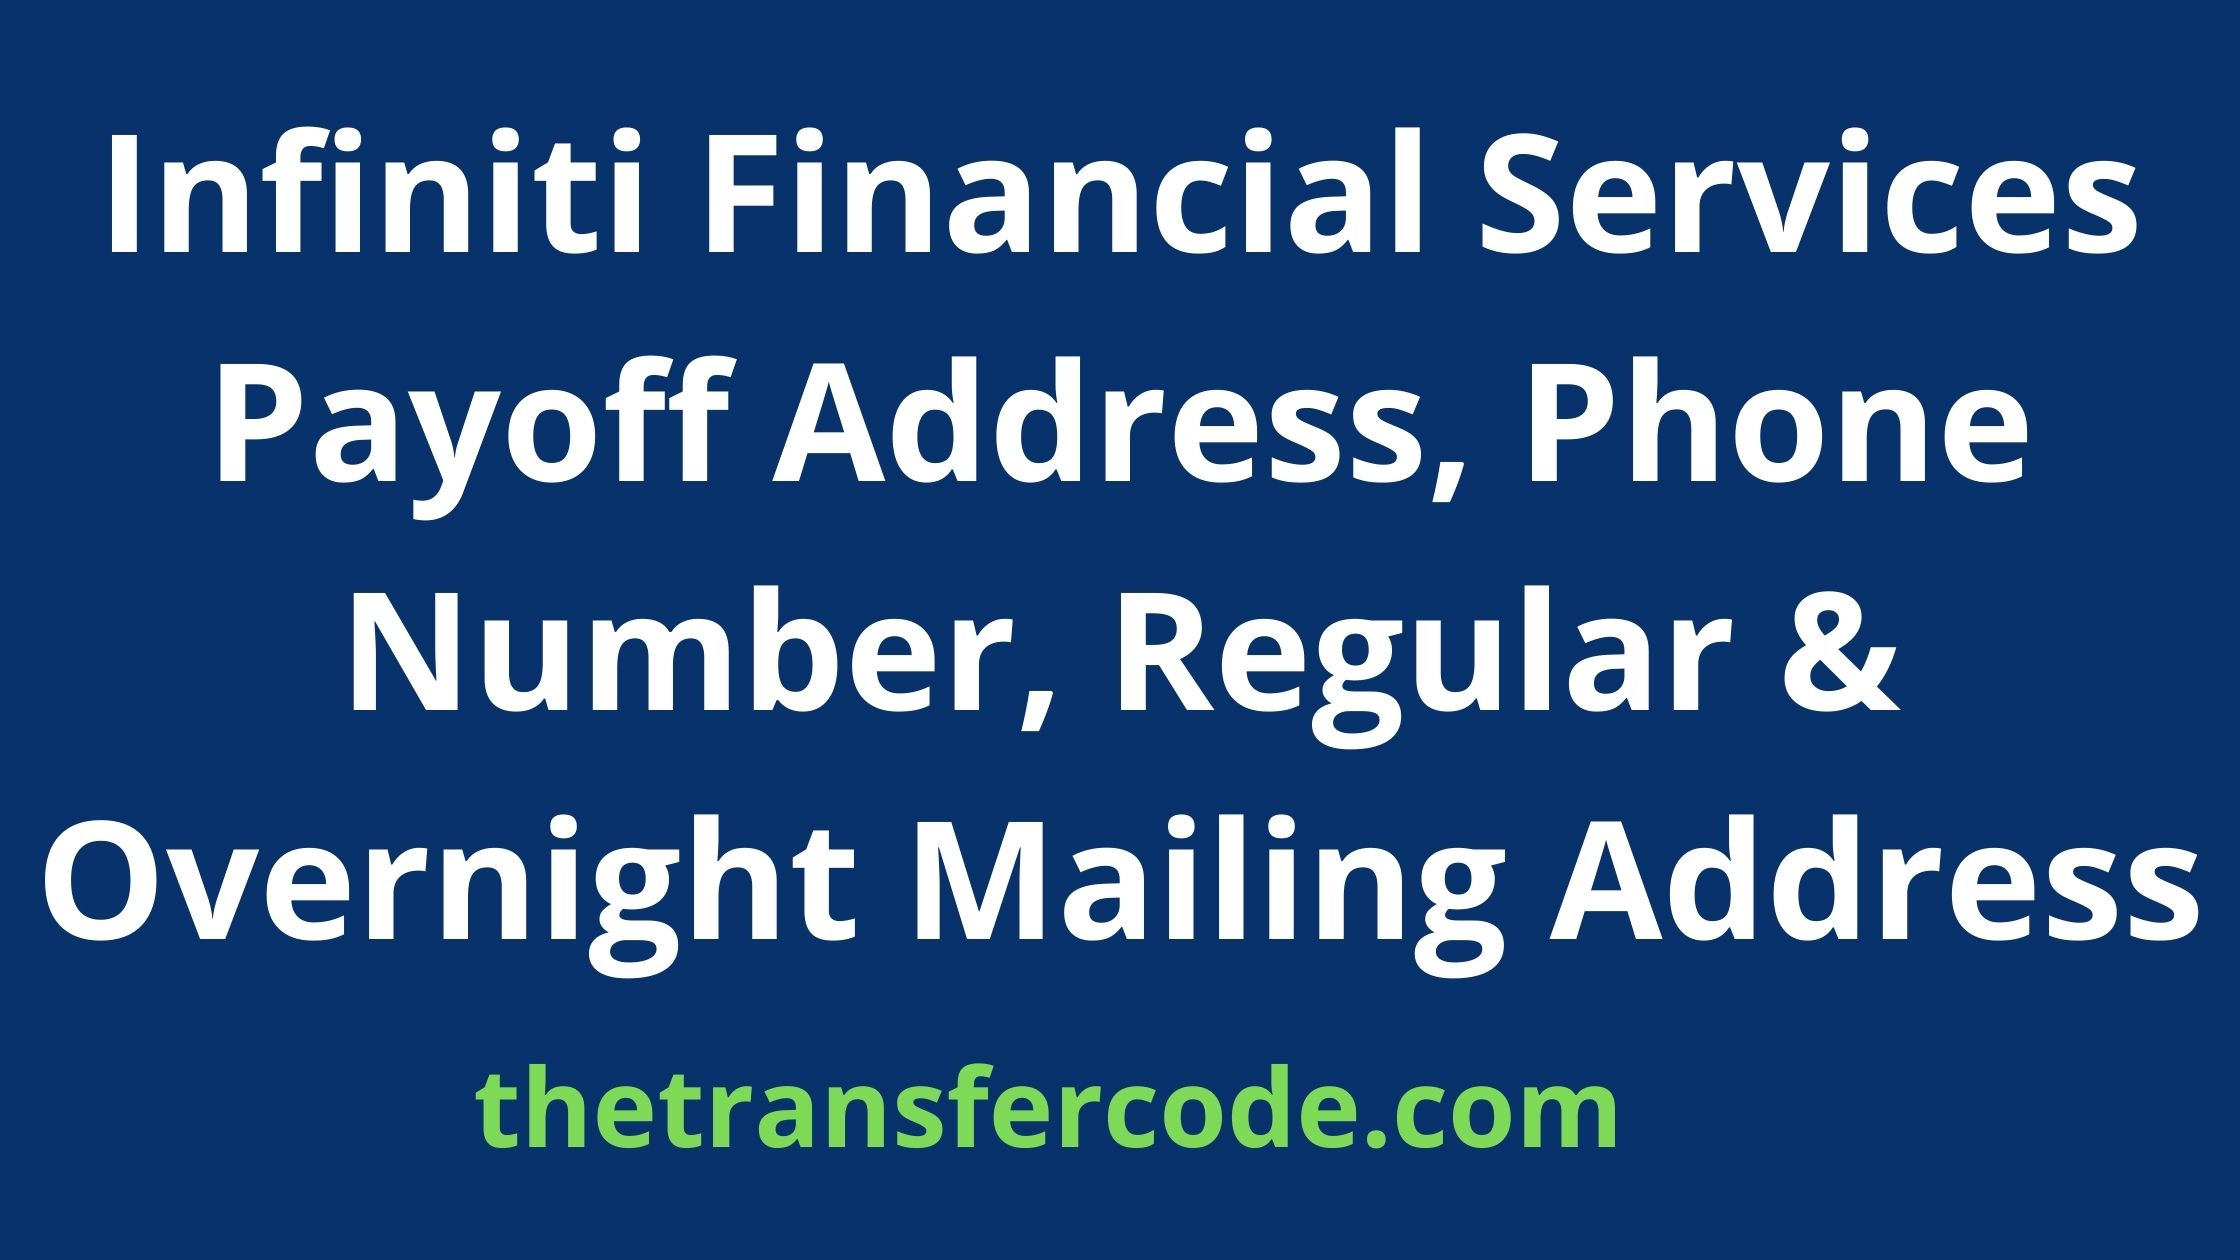 infiniti finance services payoff address